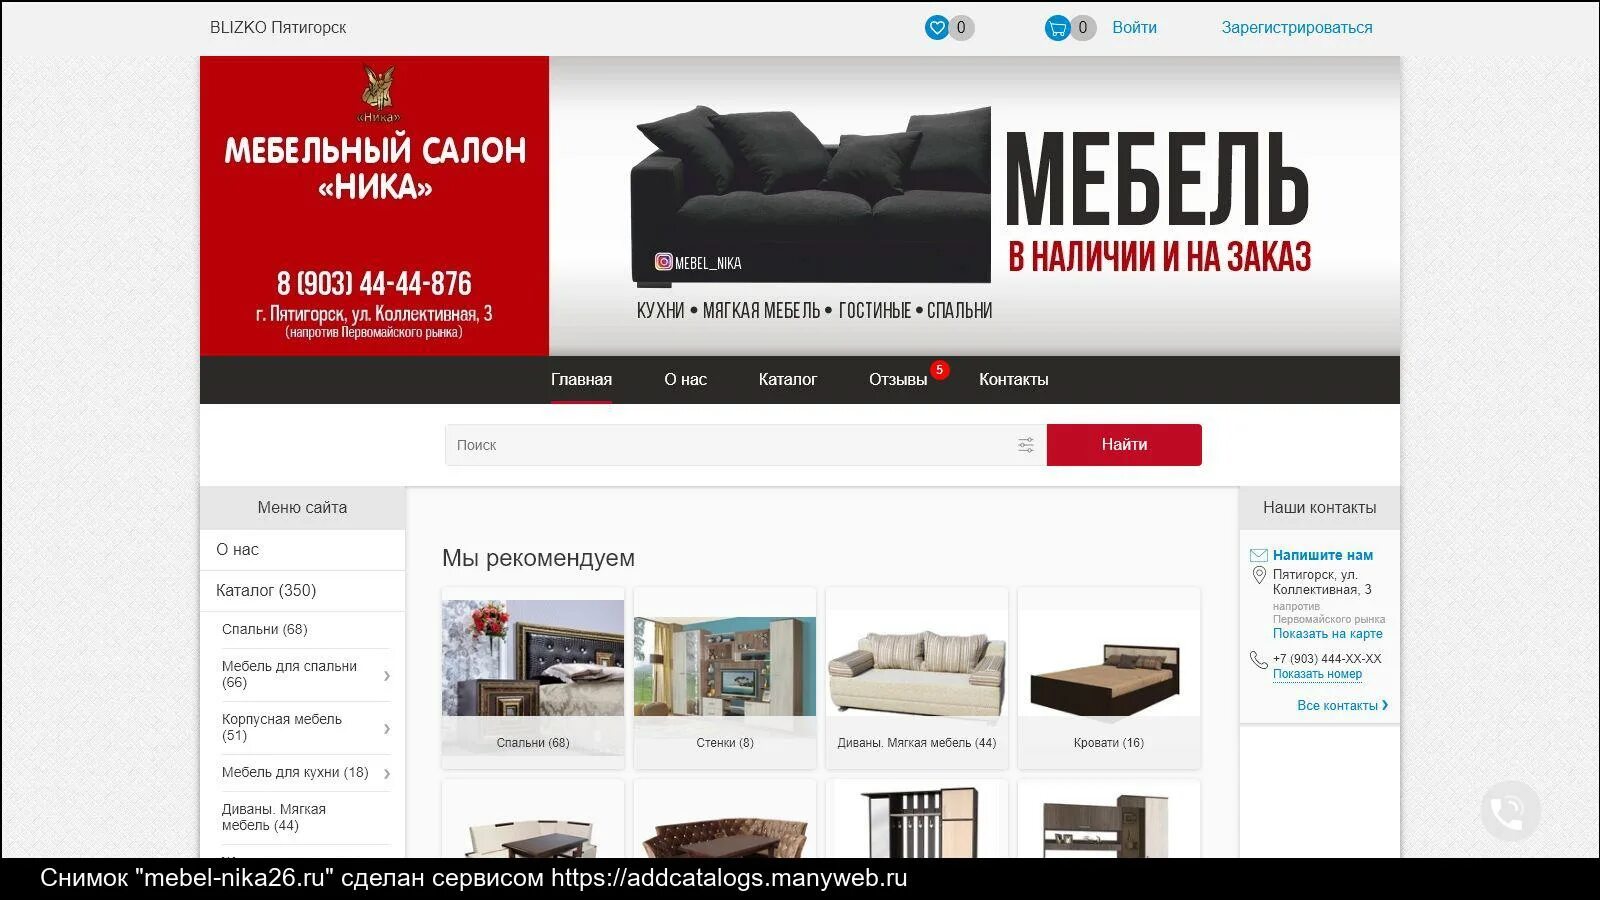 Мебель сайт казань. Топовые мебельные компании в России. Мебельный салон Азербайджан. Мебельная компания статус.